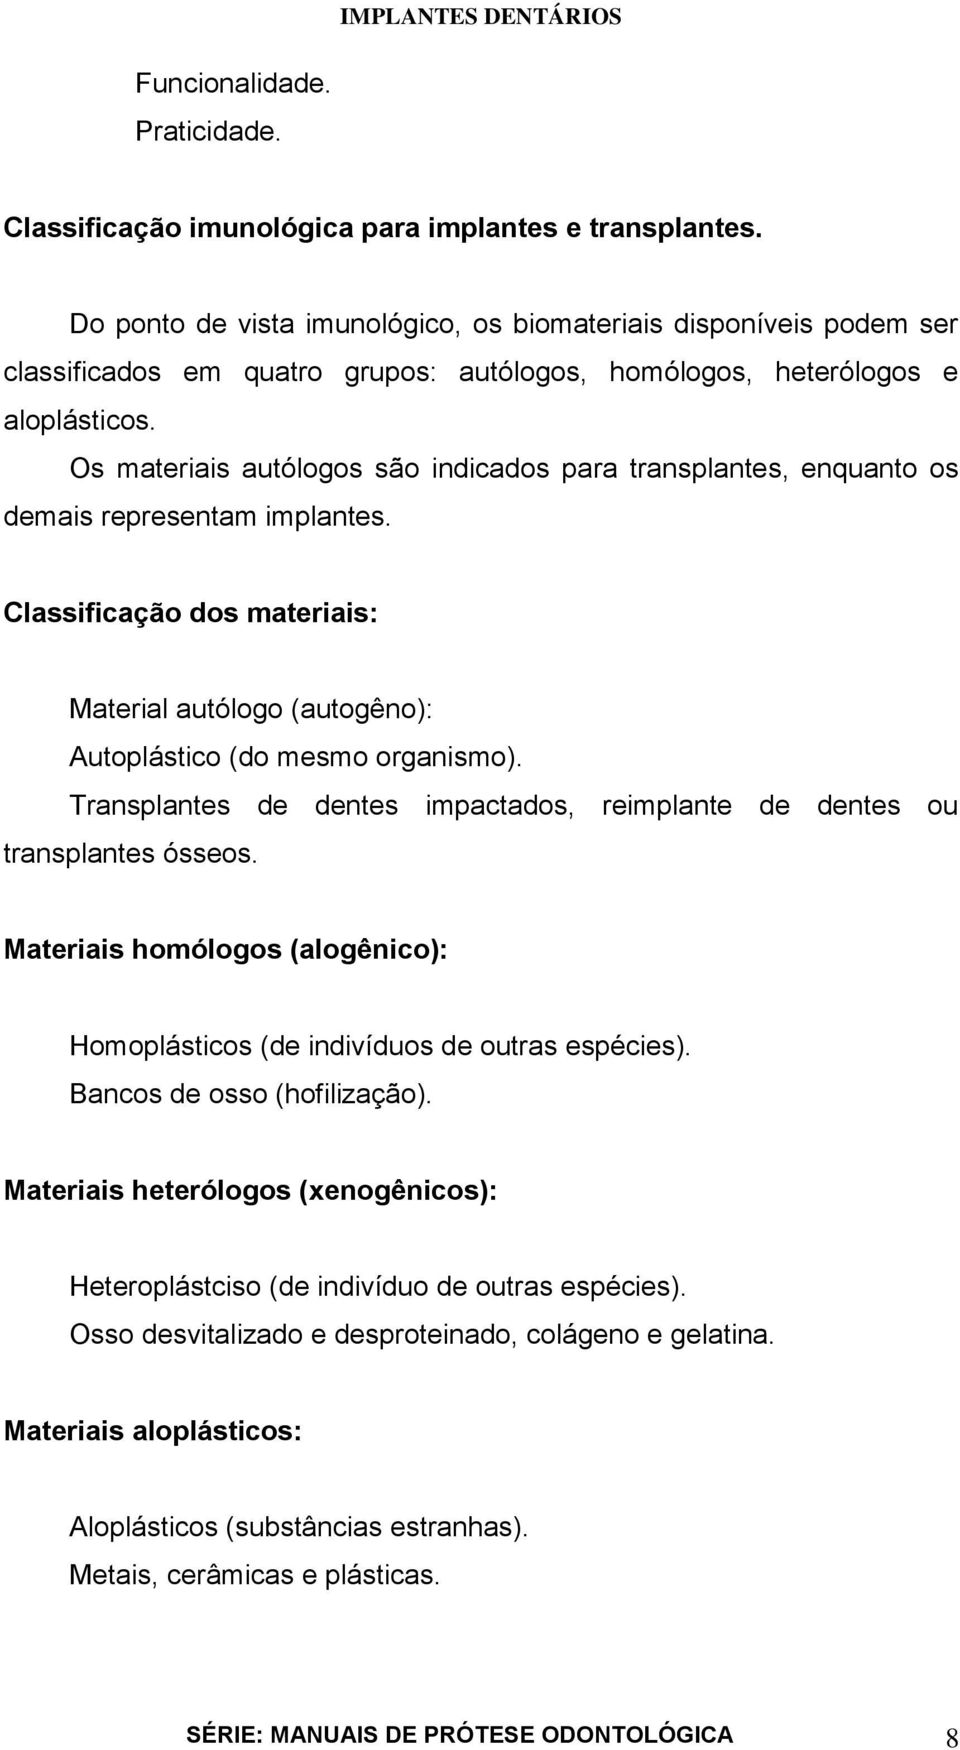 Os materiais autólogos são indicados para transplantes, enquanto os demais representam implantes. Classificação dos materiais: Material autólogo (autogêno): Autoplástico (do mesmo organismo).